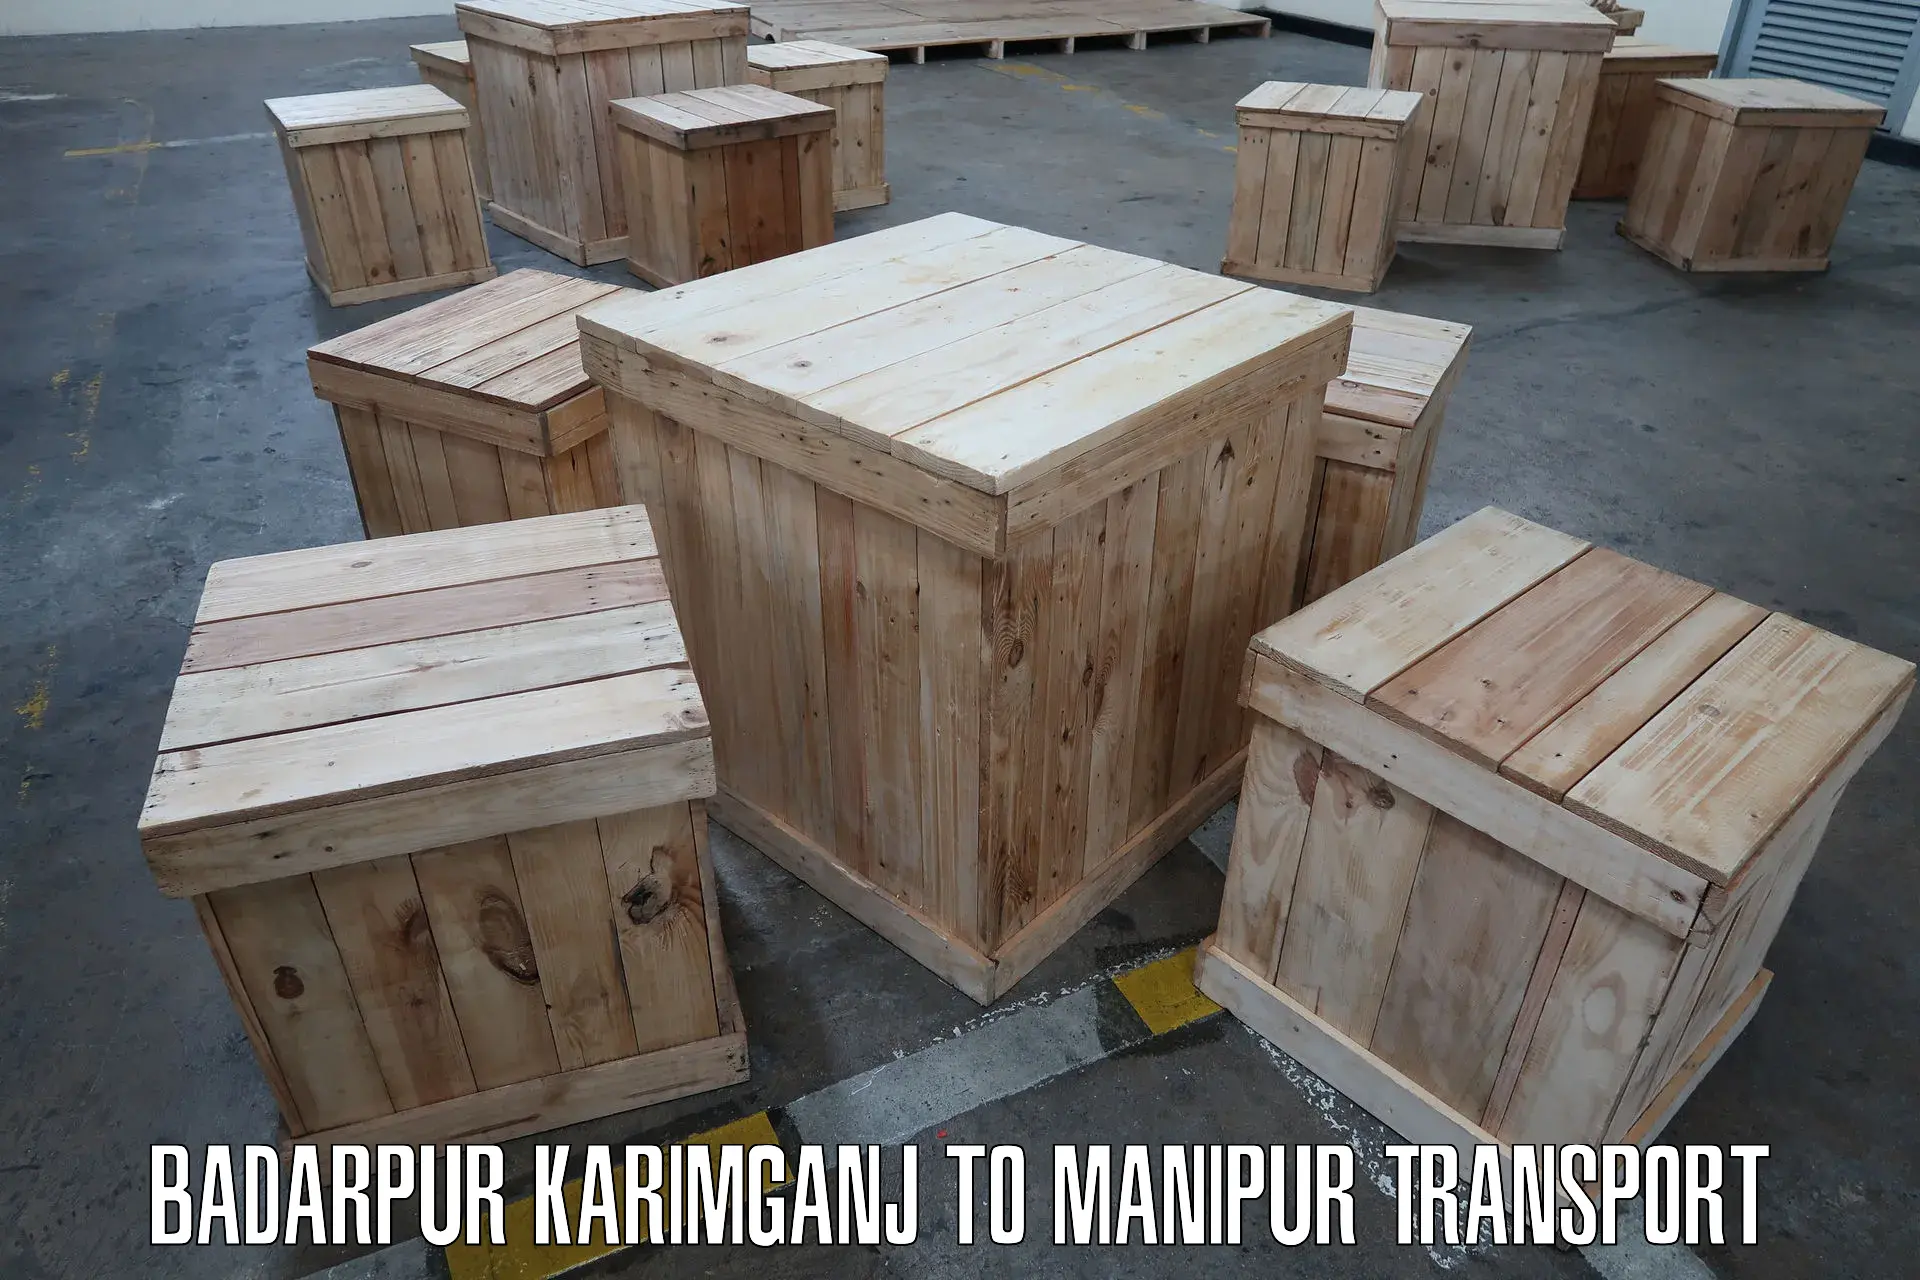 Nationwide transport services Badarpur Karimganj to Kanti